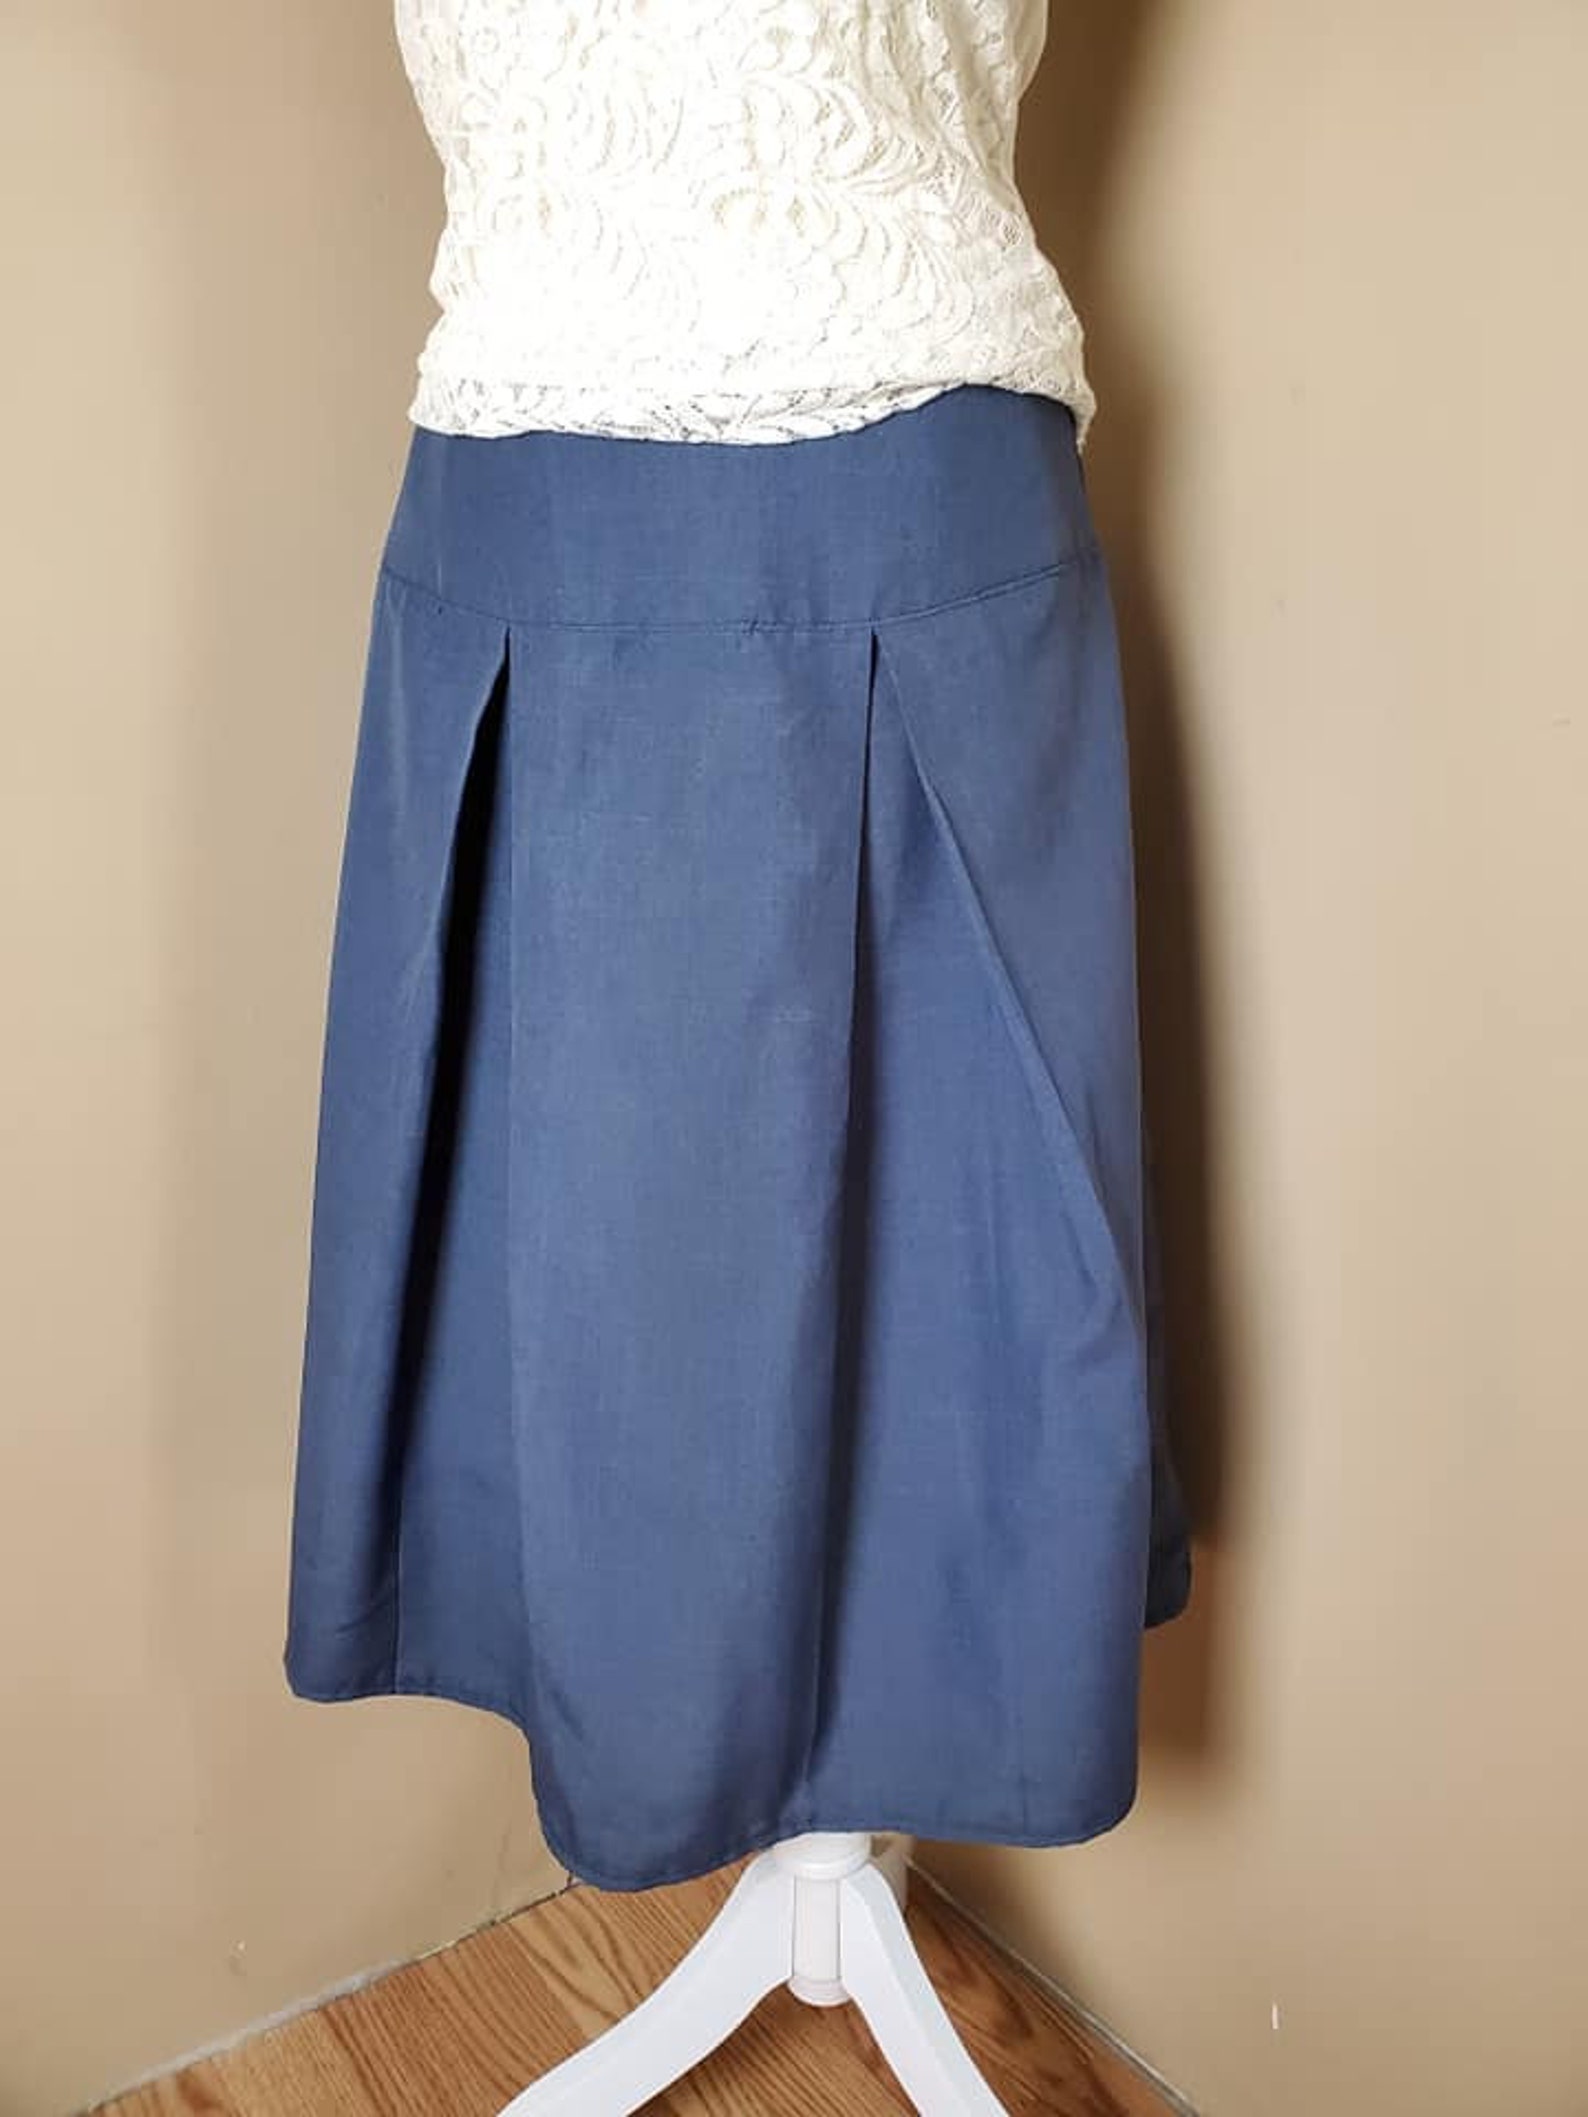 Blue Pleated Skirt Yoke Waist Mid-calf Length - Etsy